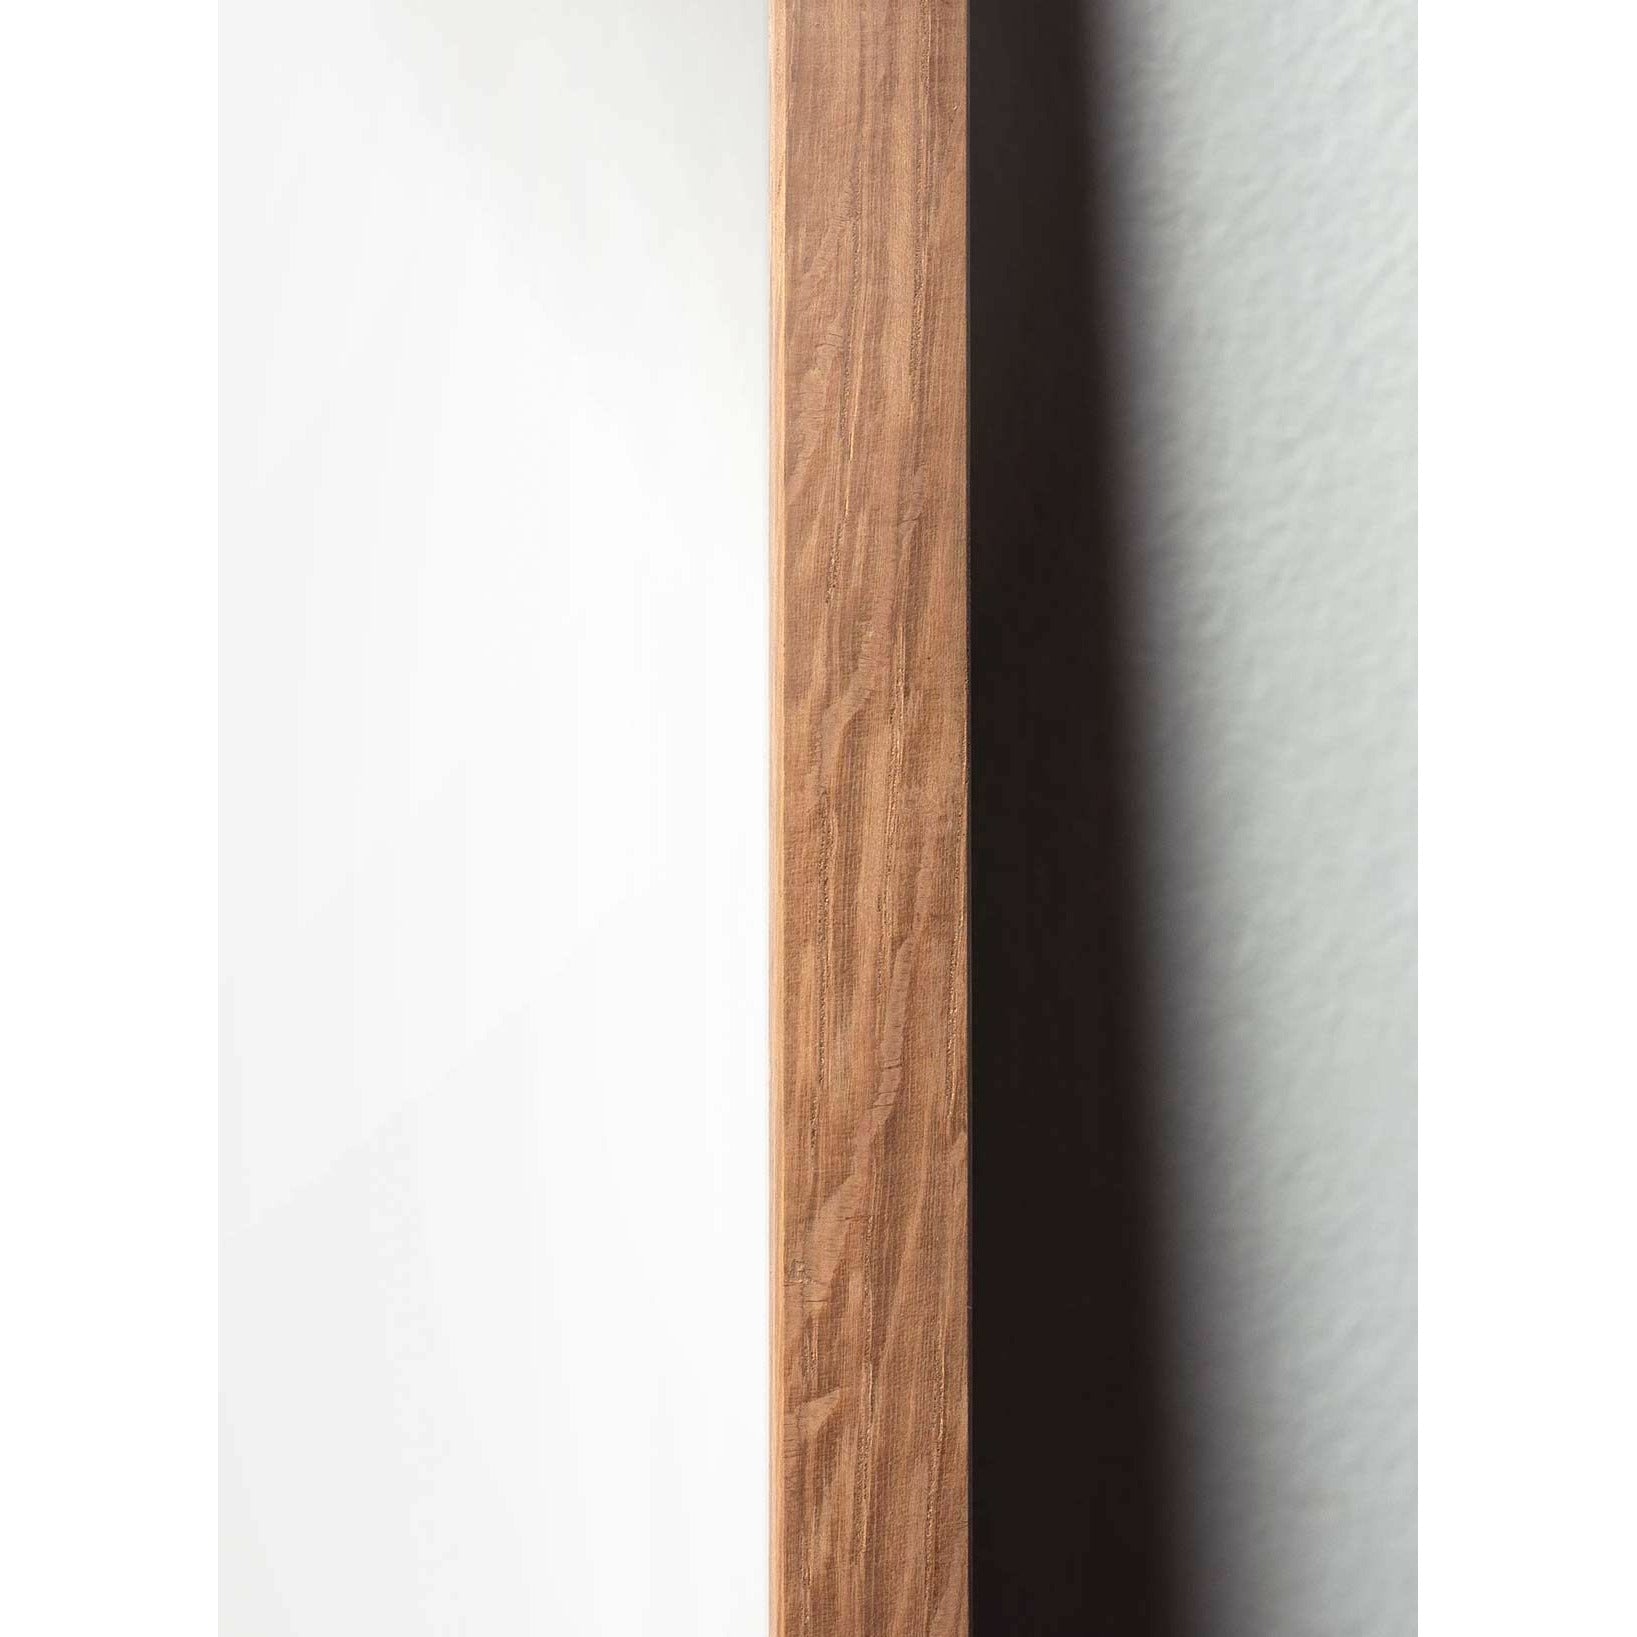 Plakat ikon mrówek mrówki, rama wykonana z jasnego drewna 30x40 cm, szary